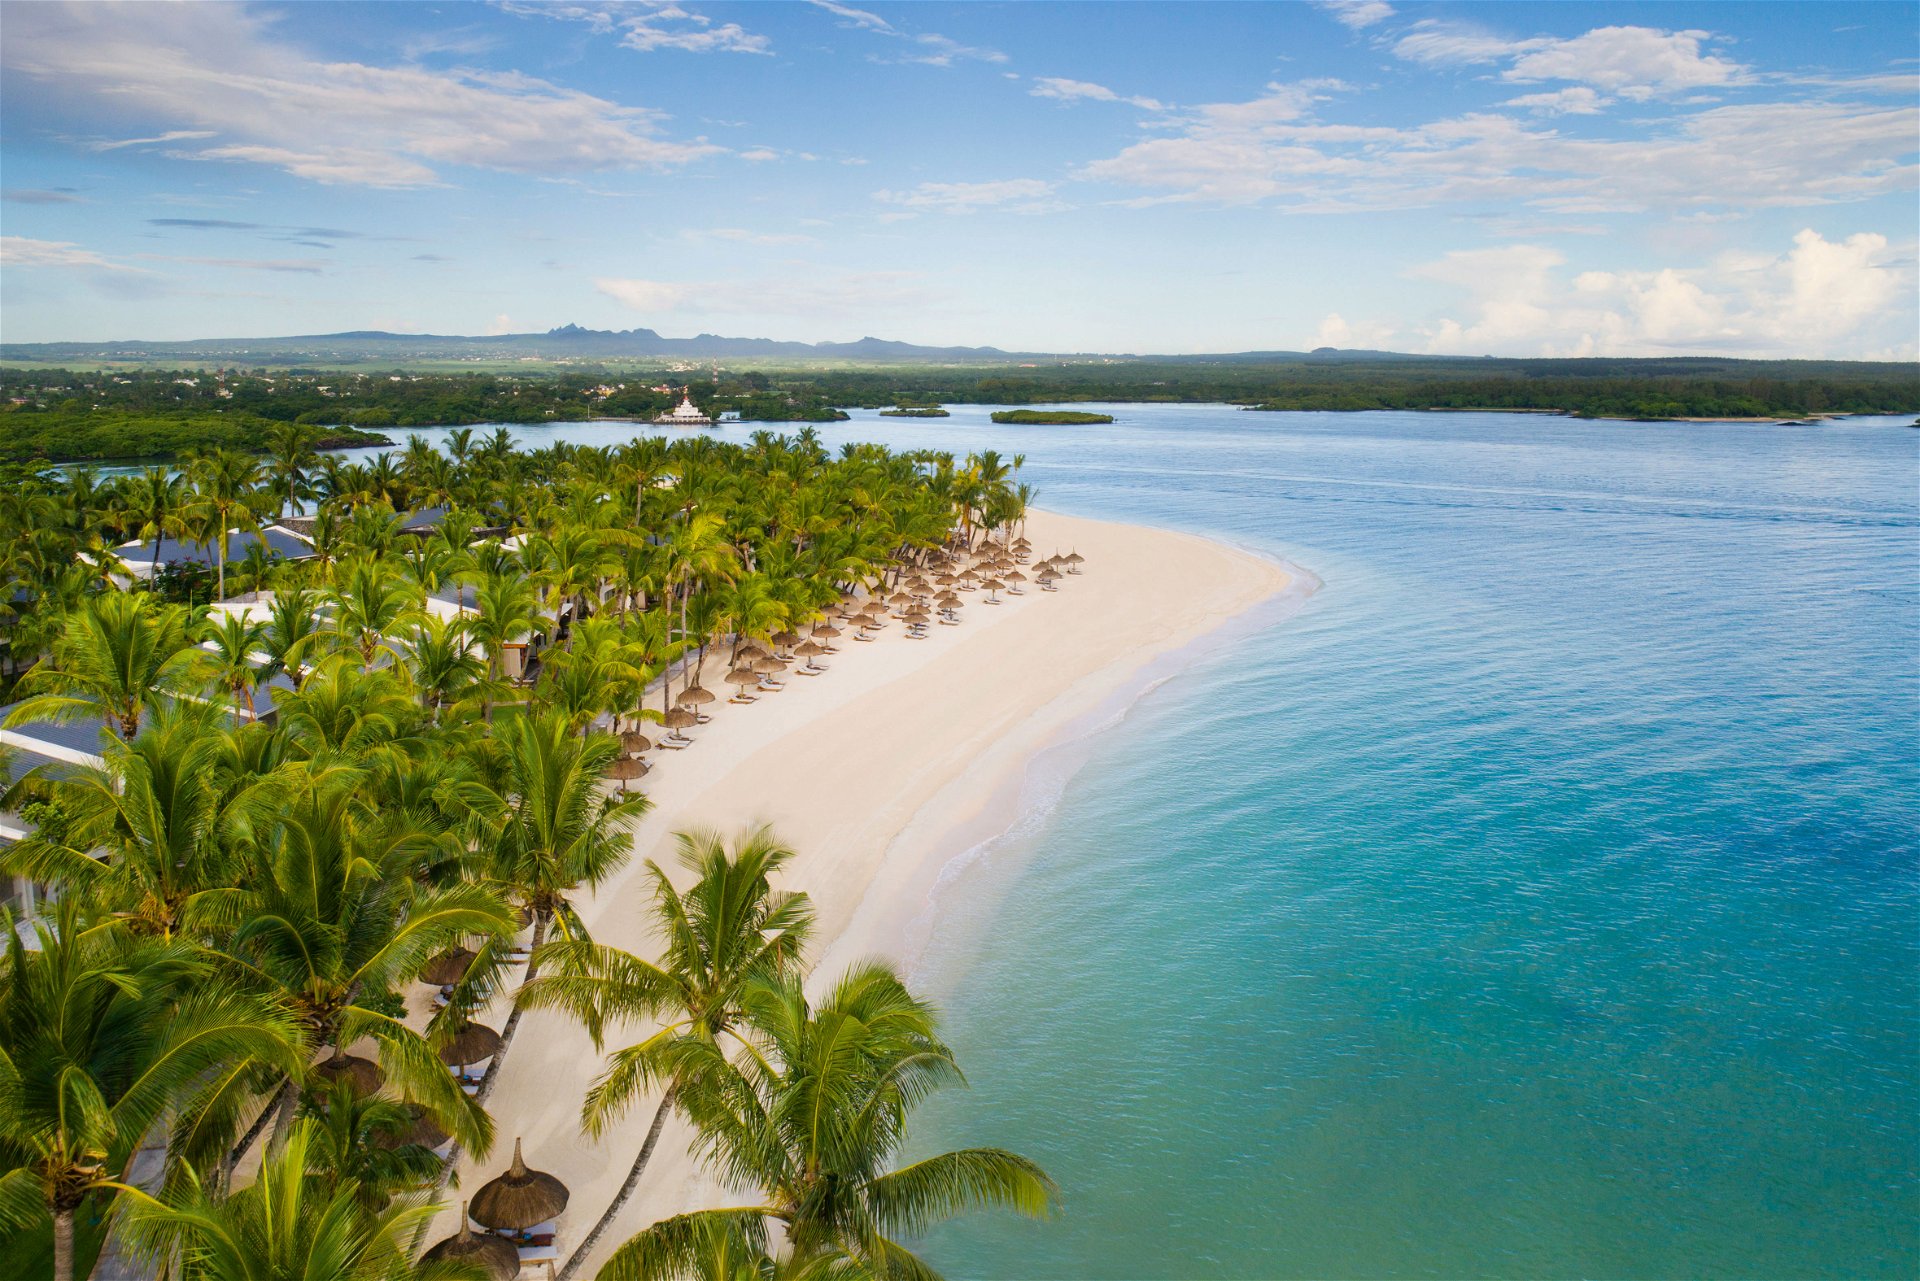 Wohltemperierte Schatzinsel: Das One&Only Resort auf Mauritius bietet 52 exklusive Villen mit Privatgärten inklusive geheiztem Swimmingpool sowie Zugang zu allen Angeboten des benachbarten 5-Sterne-Luxushotels. chalupa.at